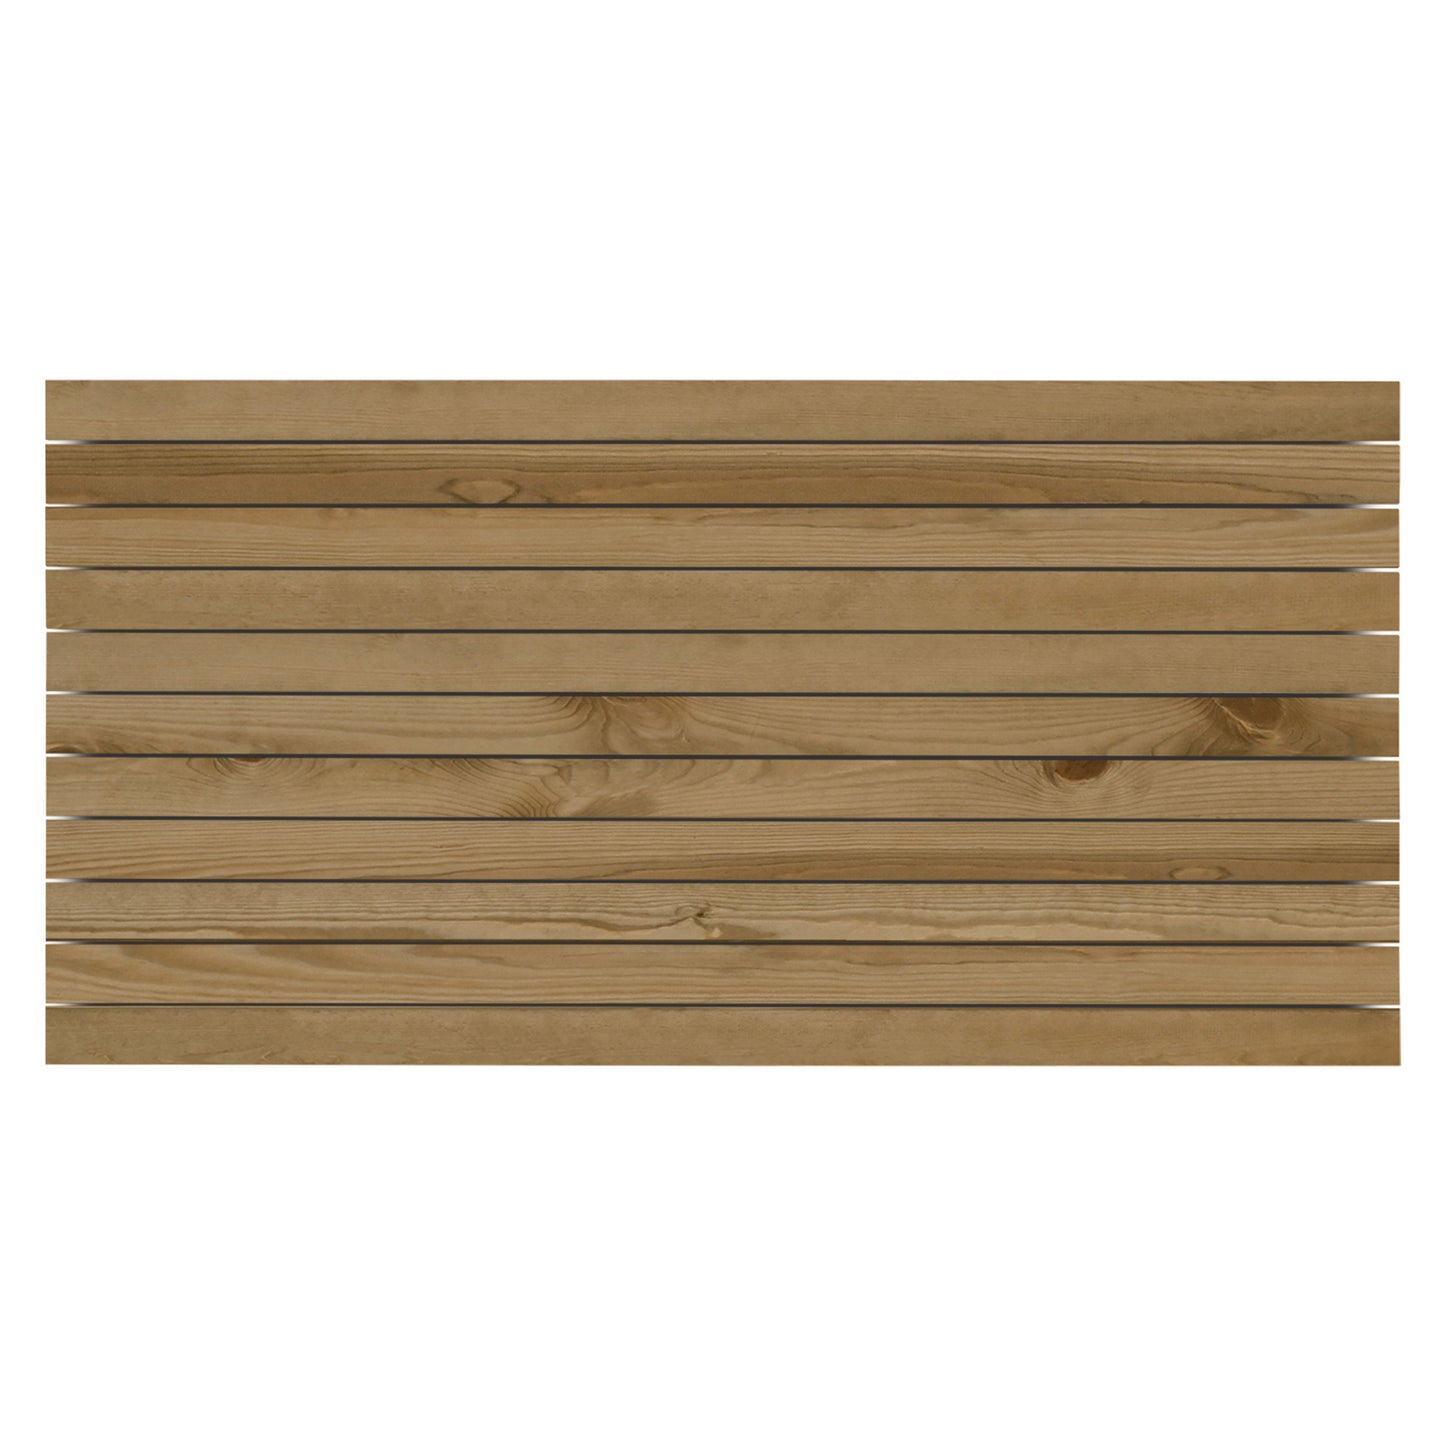 Cabecero de madera maciza en tono roble oscuro de 100x60cm - DECOWOOD